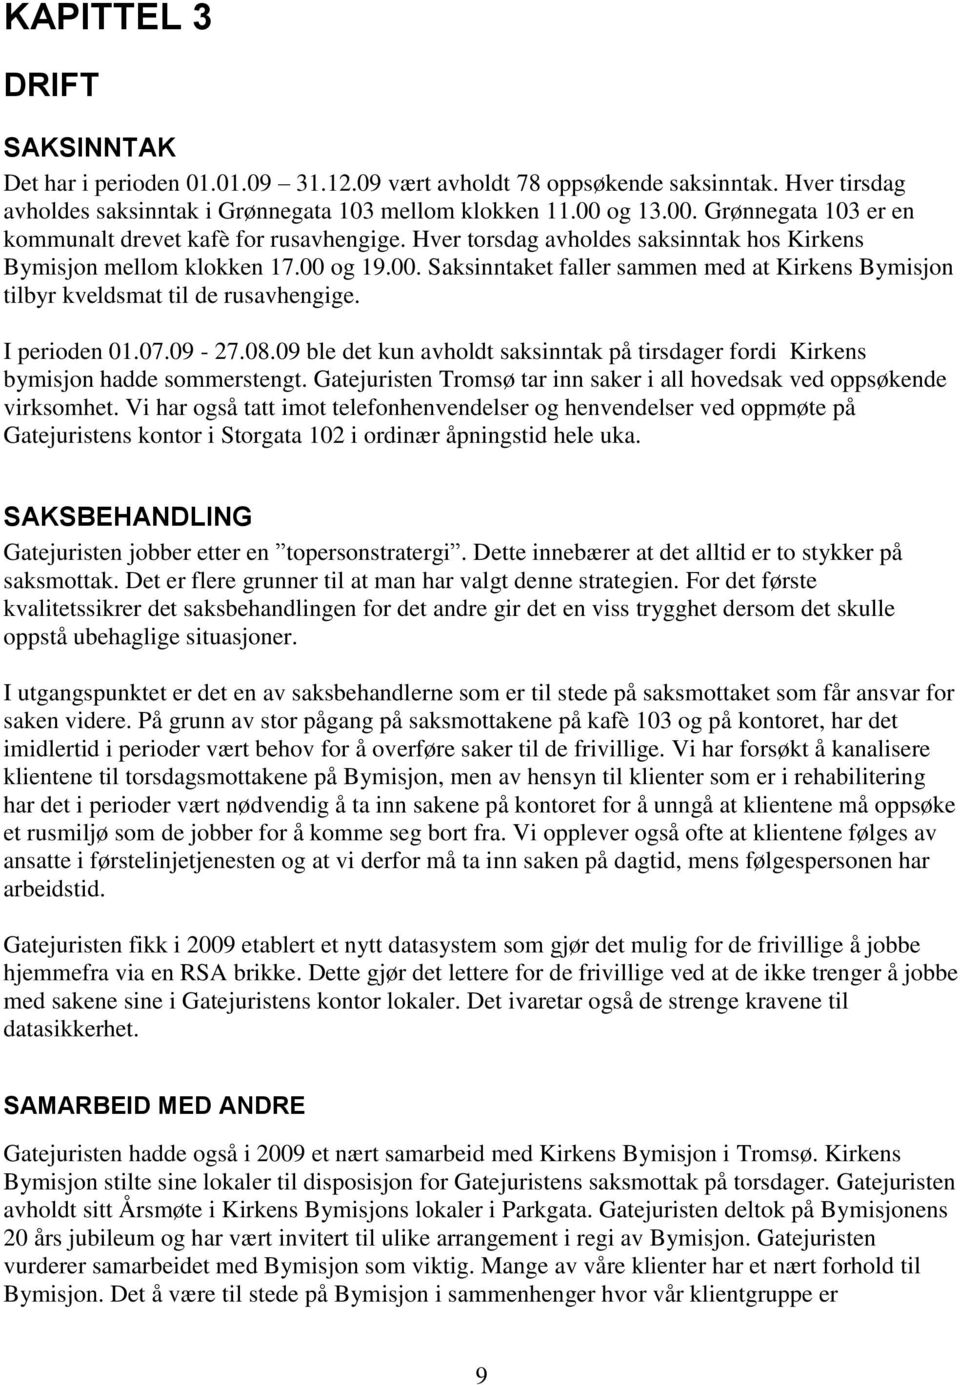 I perioden 01.07.09-27.08.09 ble det kun avholdt saksinntak på tirsdager fordi Kirkens bymisjon hadde sommerstengt. Gatejuristen Tromsø tar inn saker i all hovedsak ved oppsøkende virksomhet.